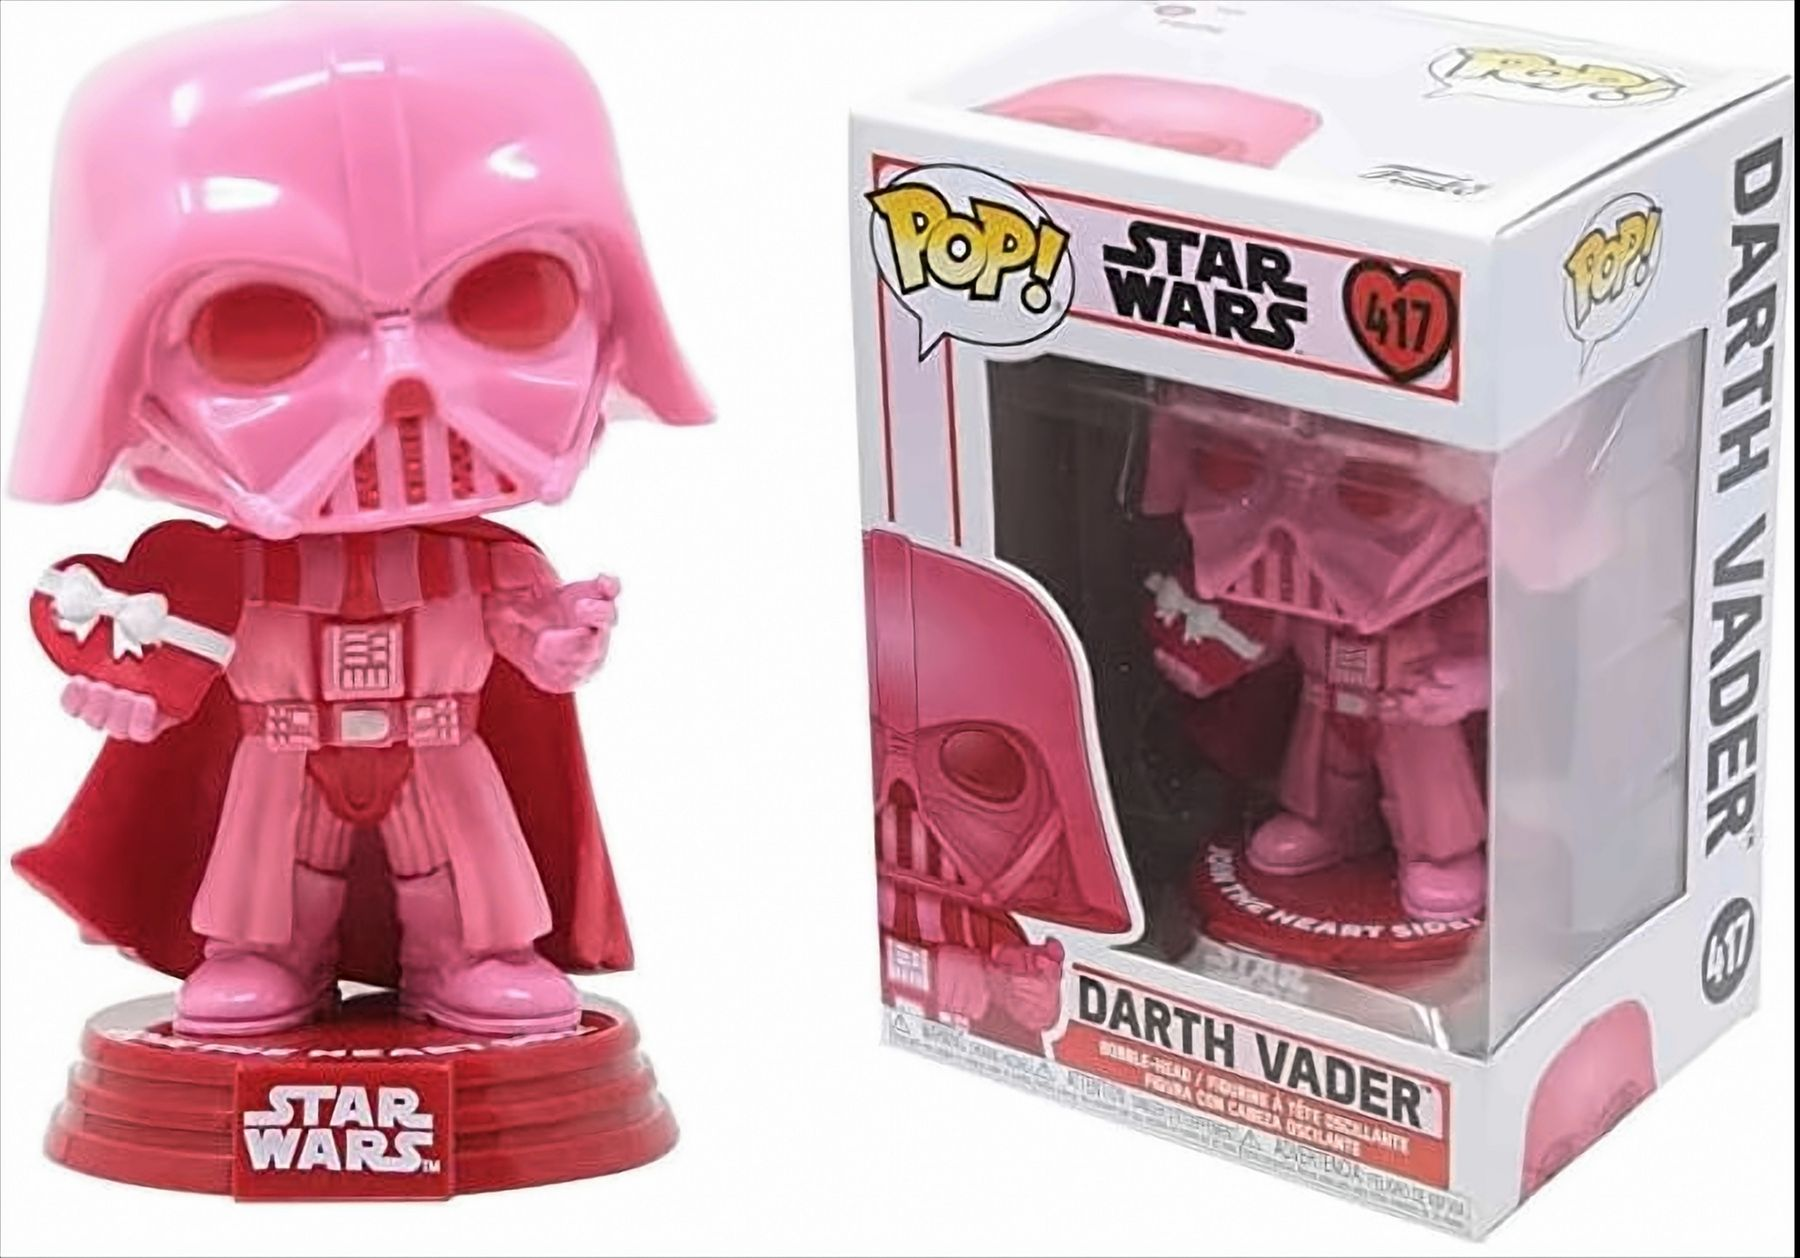 Valentines Wars: Darth Vader Star